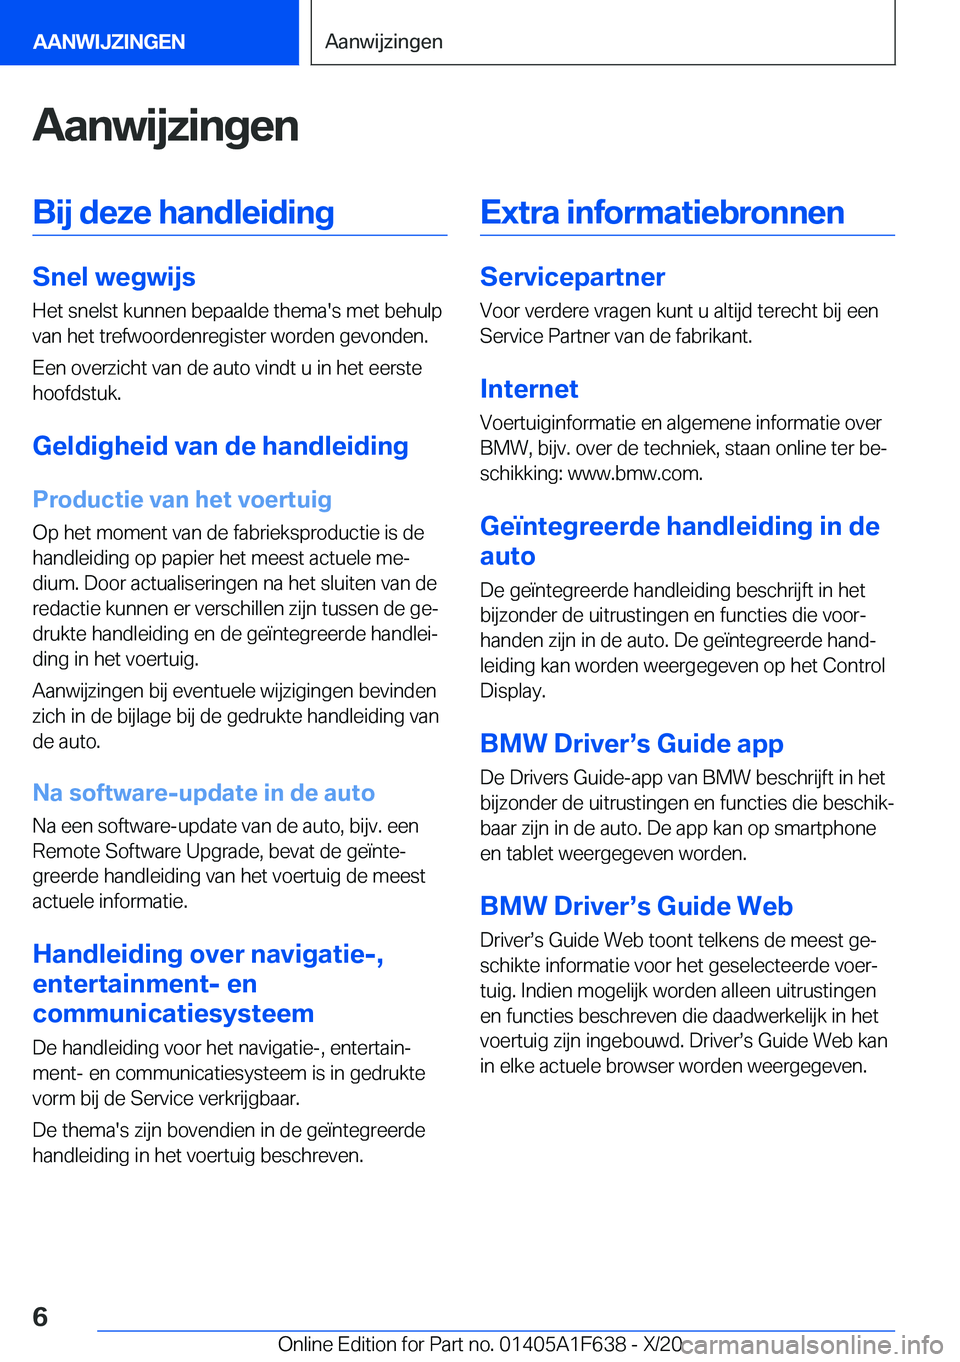 BMW X4 2021  Instructieboekjes (in Dutch) �A�a�n�w�i�j�z�i�n�g�e�n�B�i�j��d�e�z�e��h�a�n�d�l�e�i�d�i�n�g
�S�n�e�l��w�e�g�w�i�j�s
�H�e�t��s�n�e�l�s�t��k�u�n�n�e�n��b�e�p�a�a�l�d�e��t�h�e�m�a�'�s��m�e�t��b�e�h�u�l�p
�v�a�n��h�e�t�